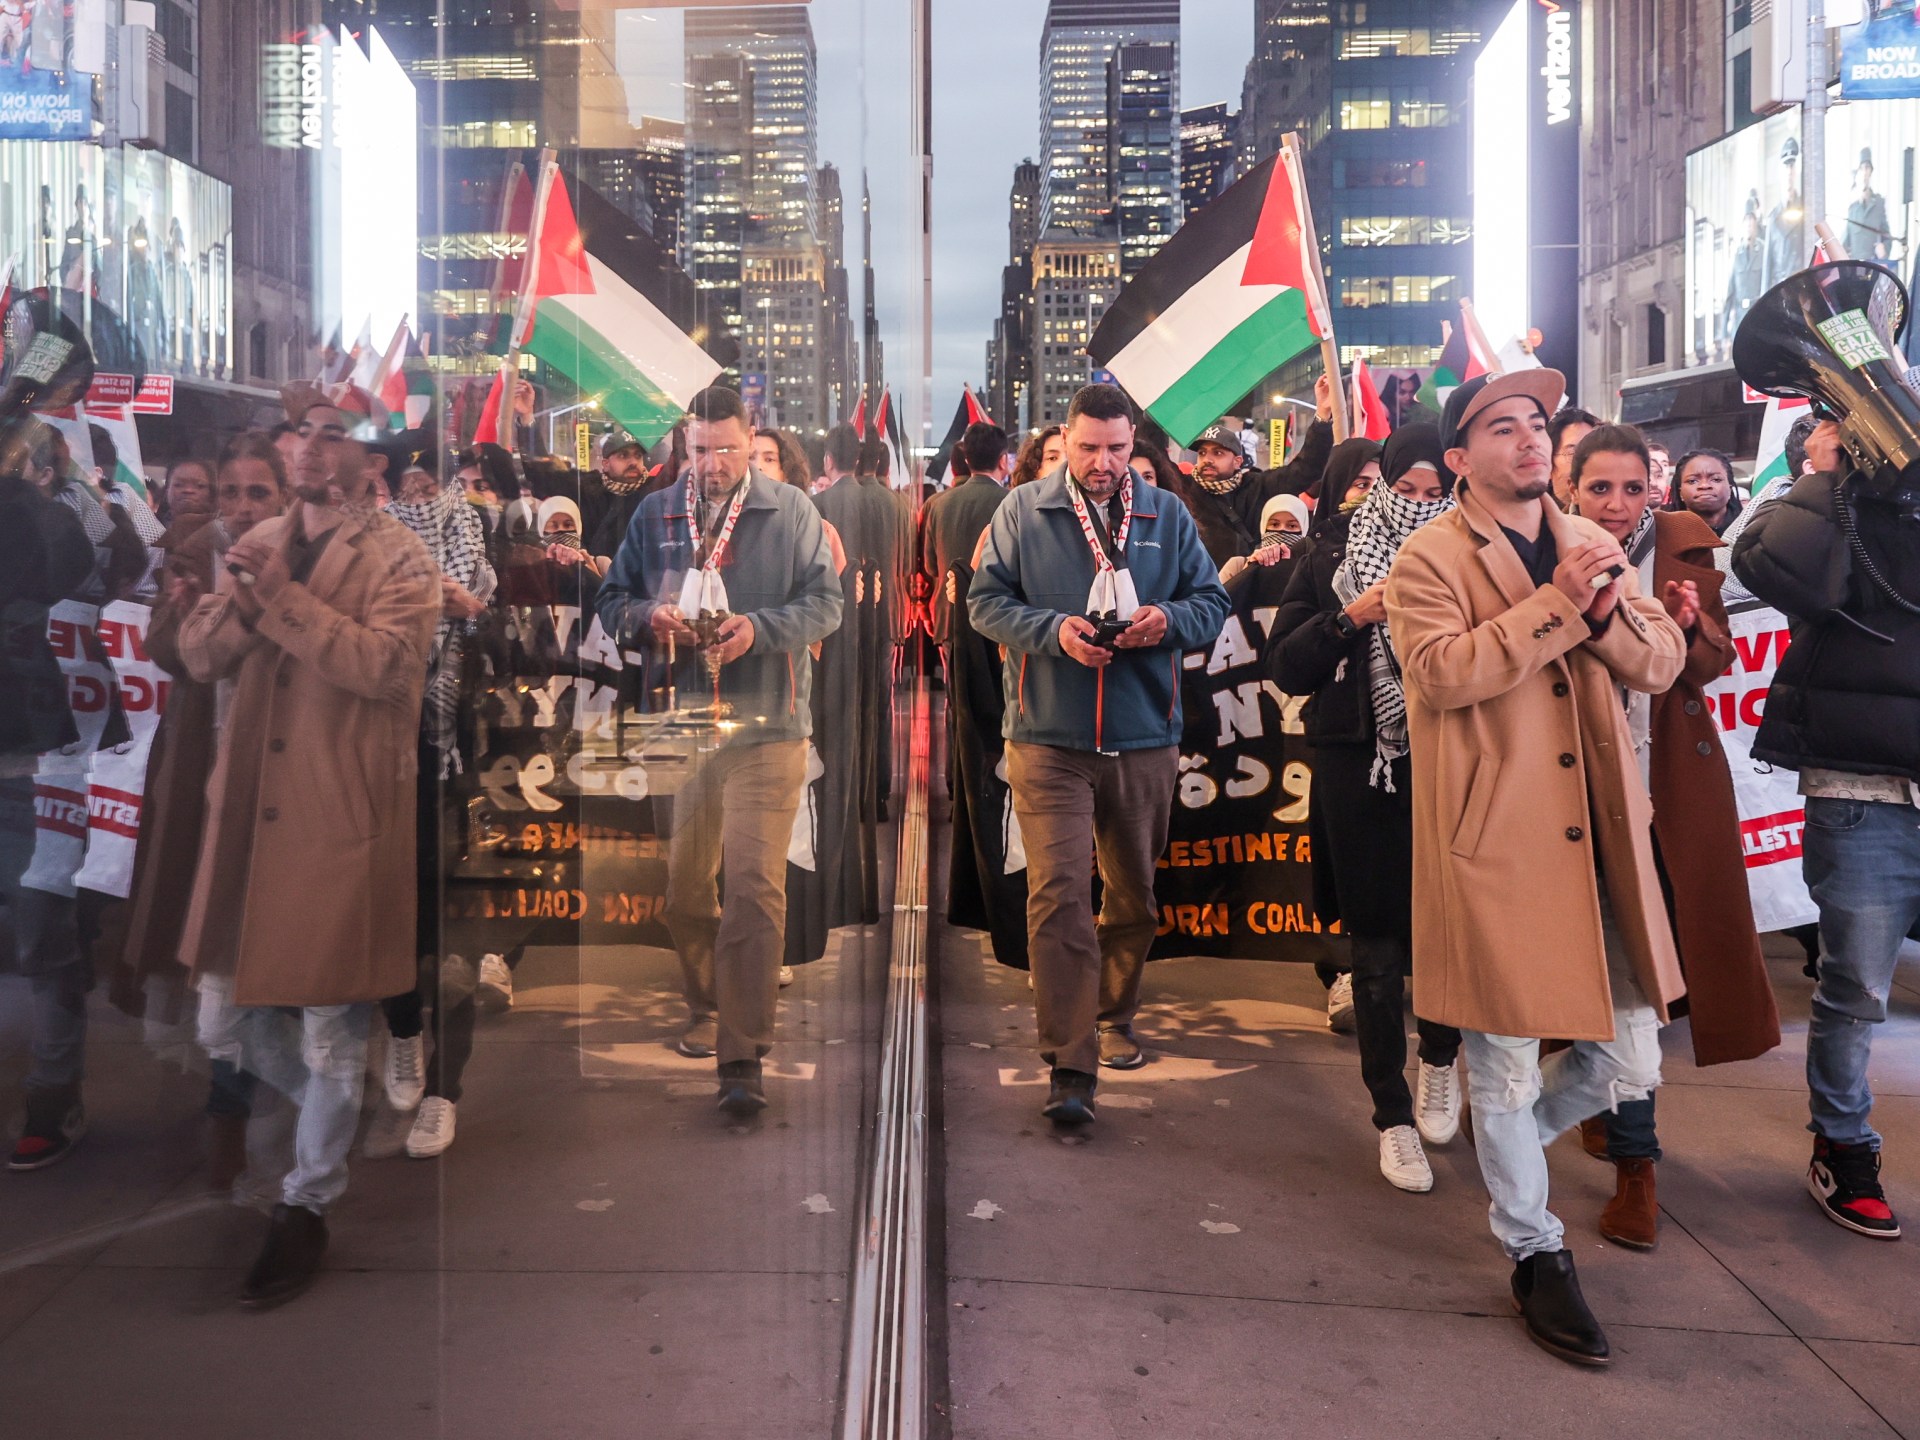 متظاهرون يقتحمون مقر صحيفة نيويورك تايمز احتجاجا على انحيازها لإسرائيل | أخبار – البوكس نيوز